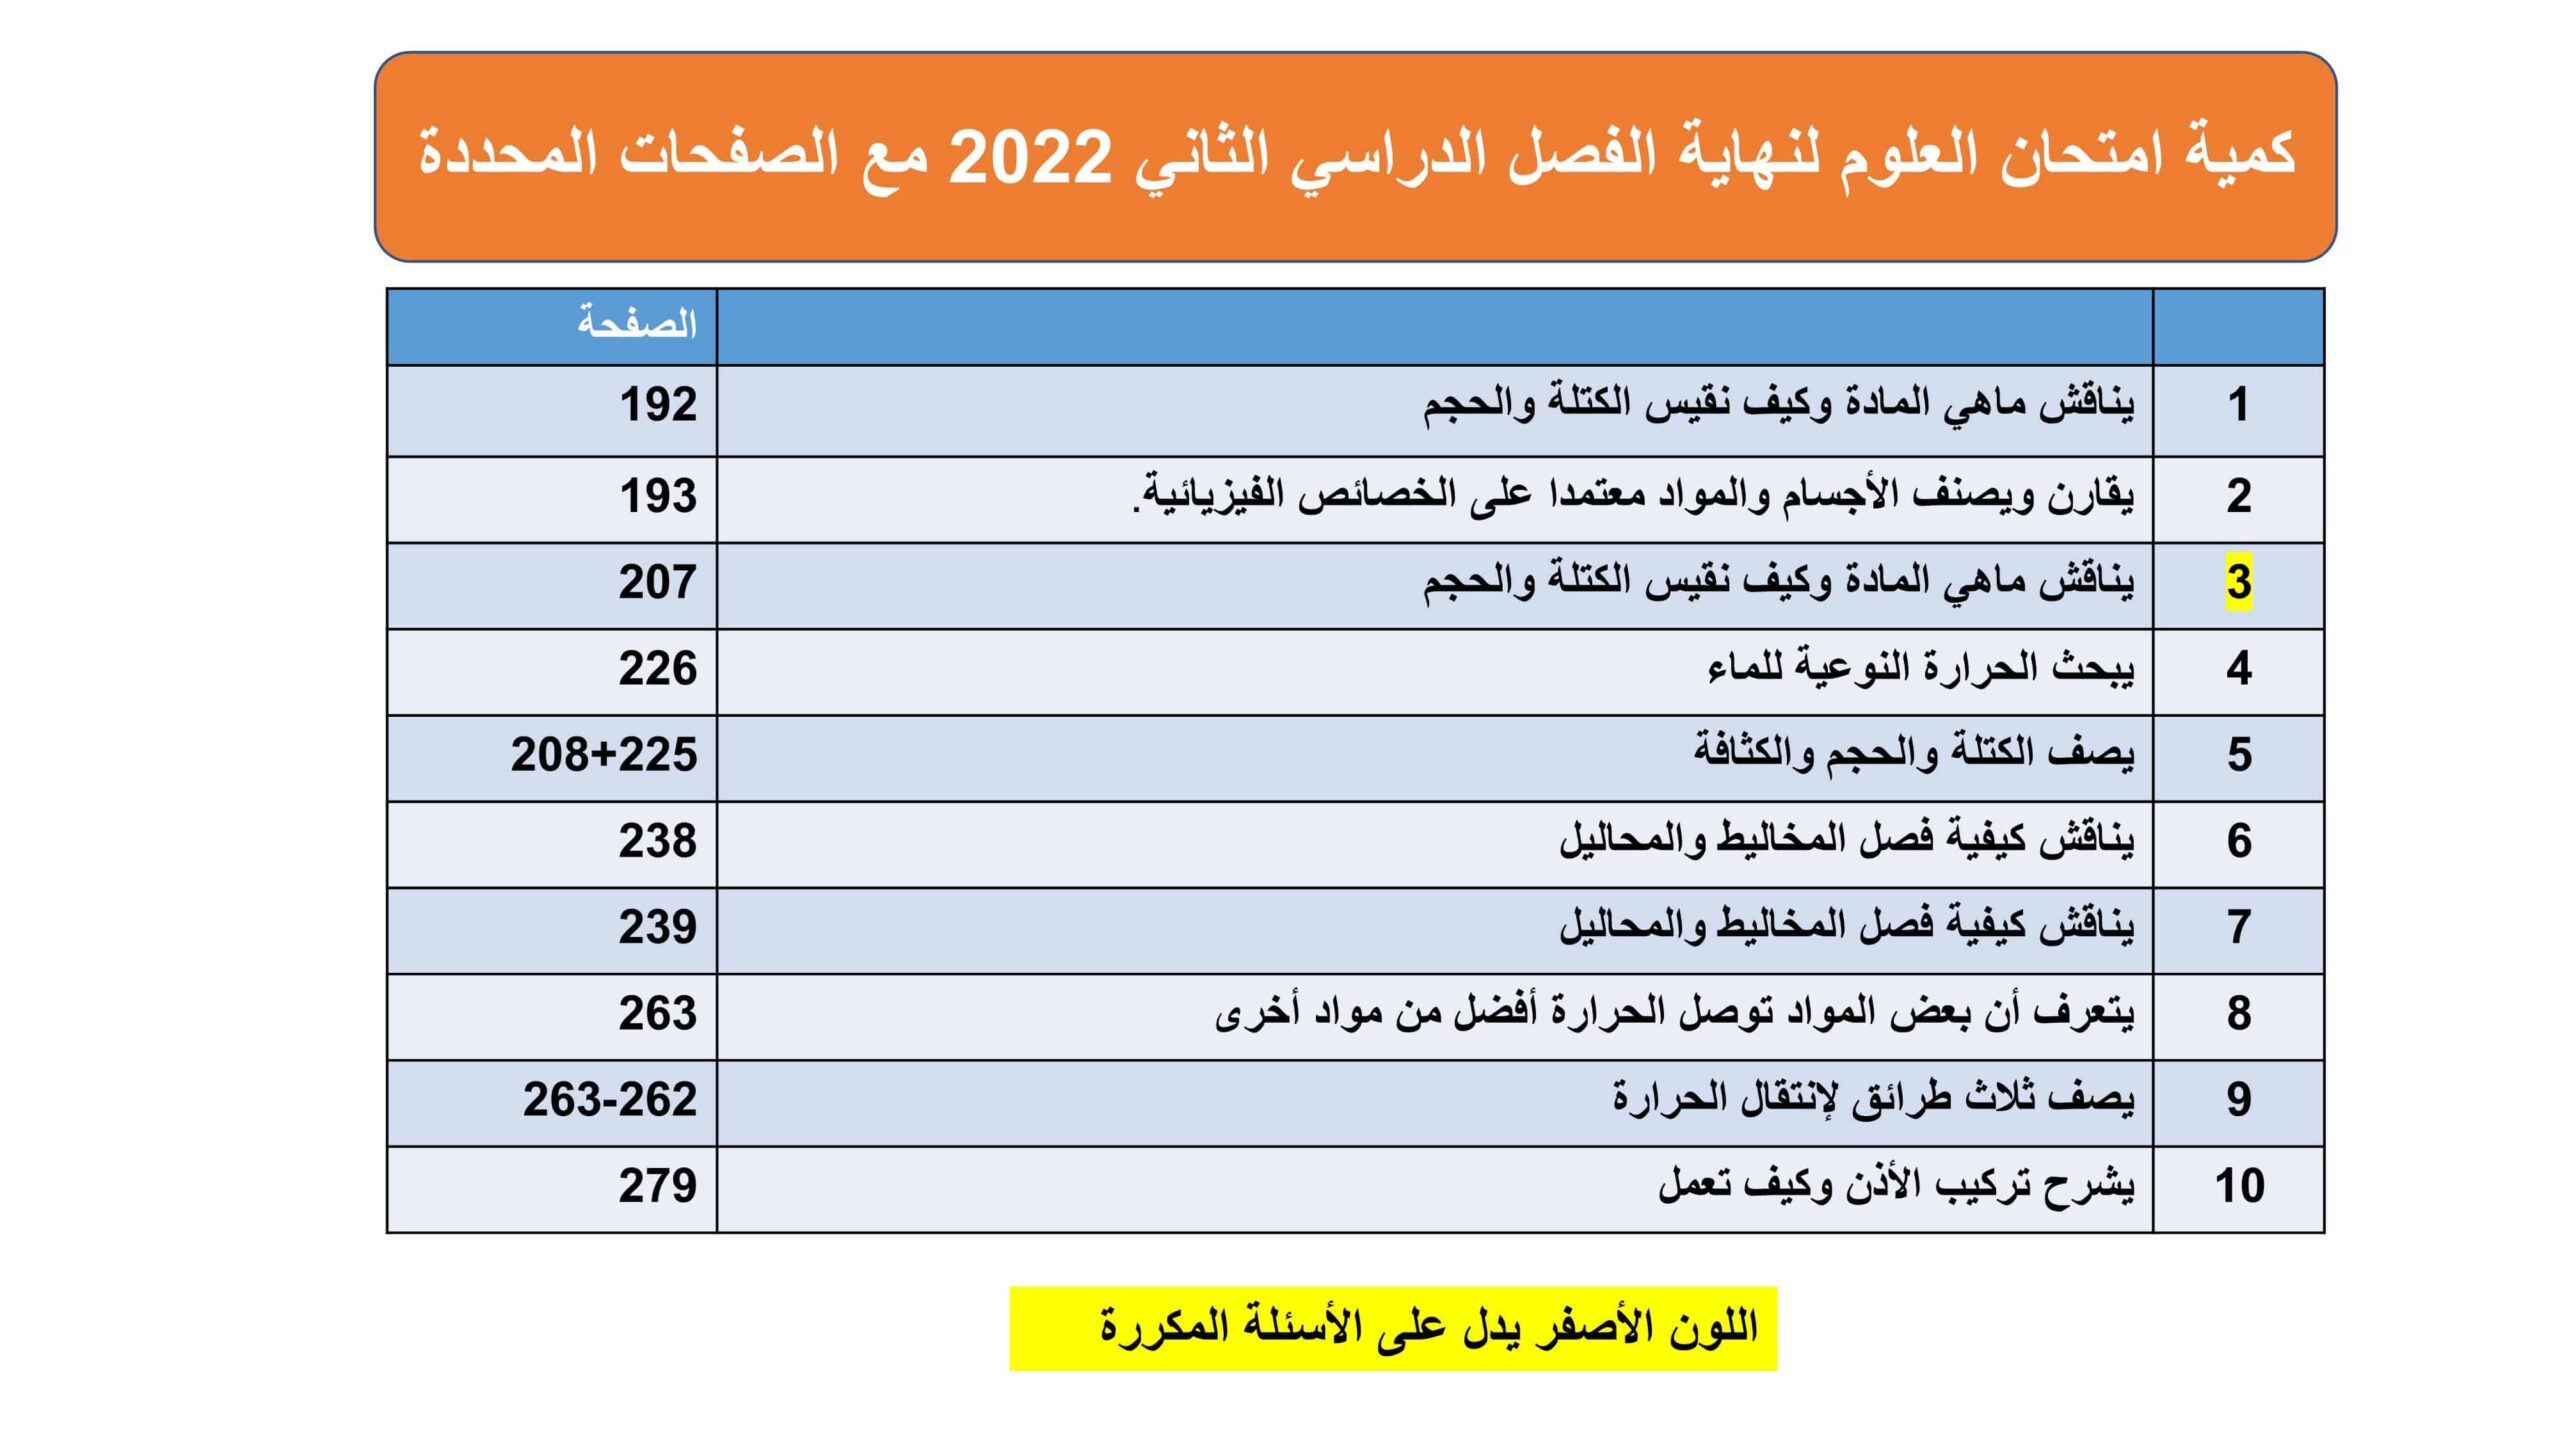 كمية امتحان مع الصفحات المحددة العلوم المتكاملة الصف الرابع الفصل الدراسي الثاني 2022